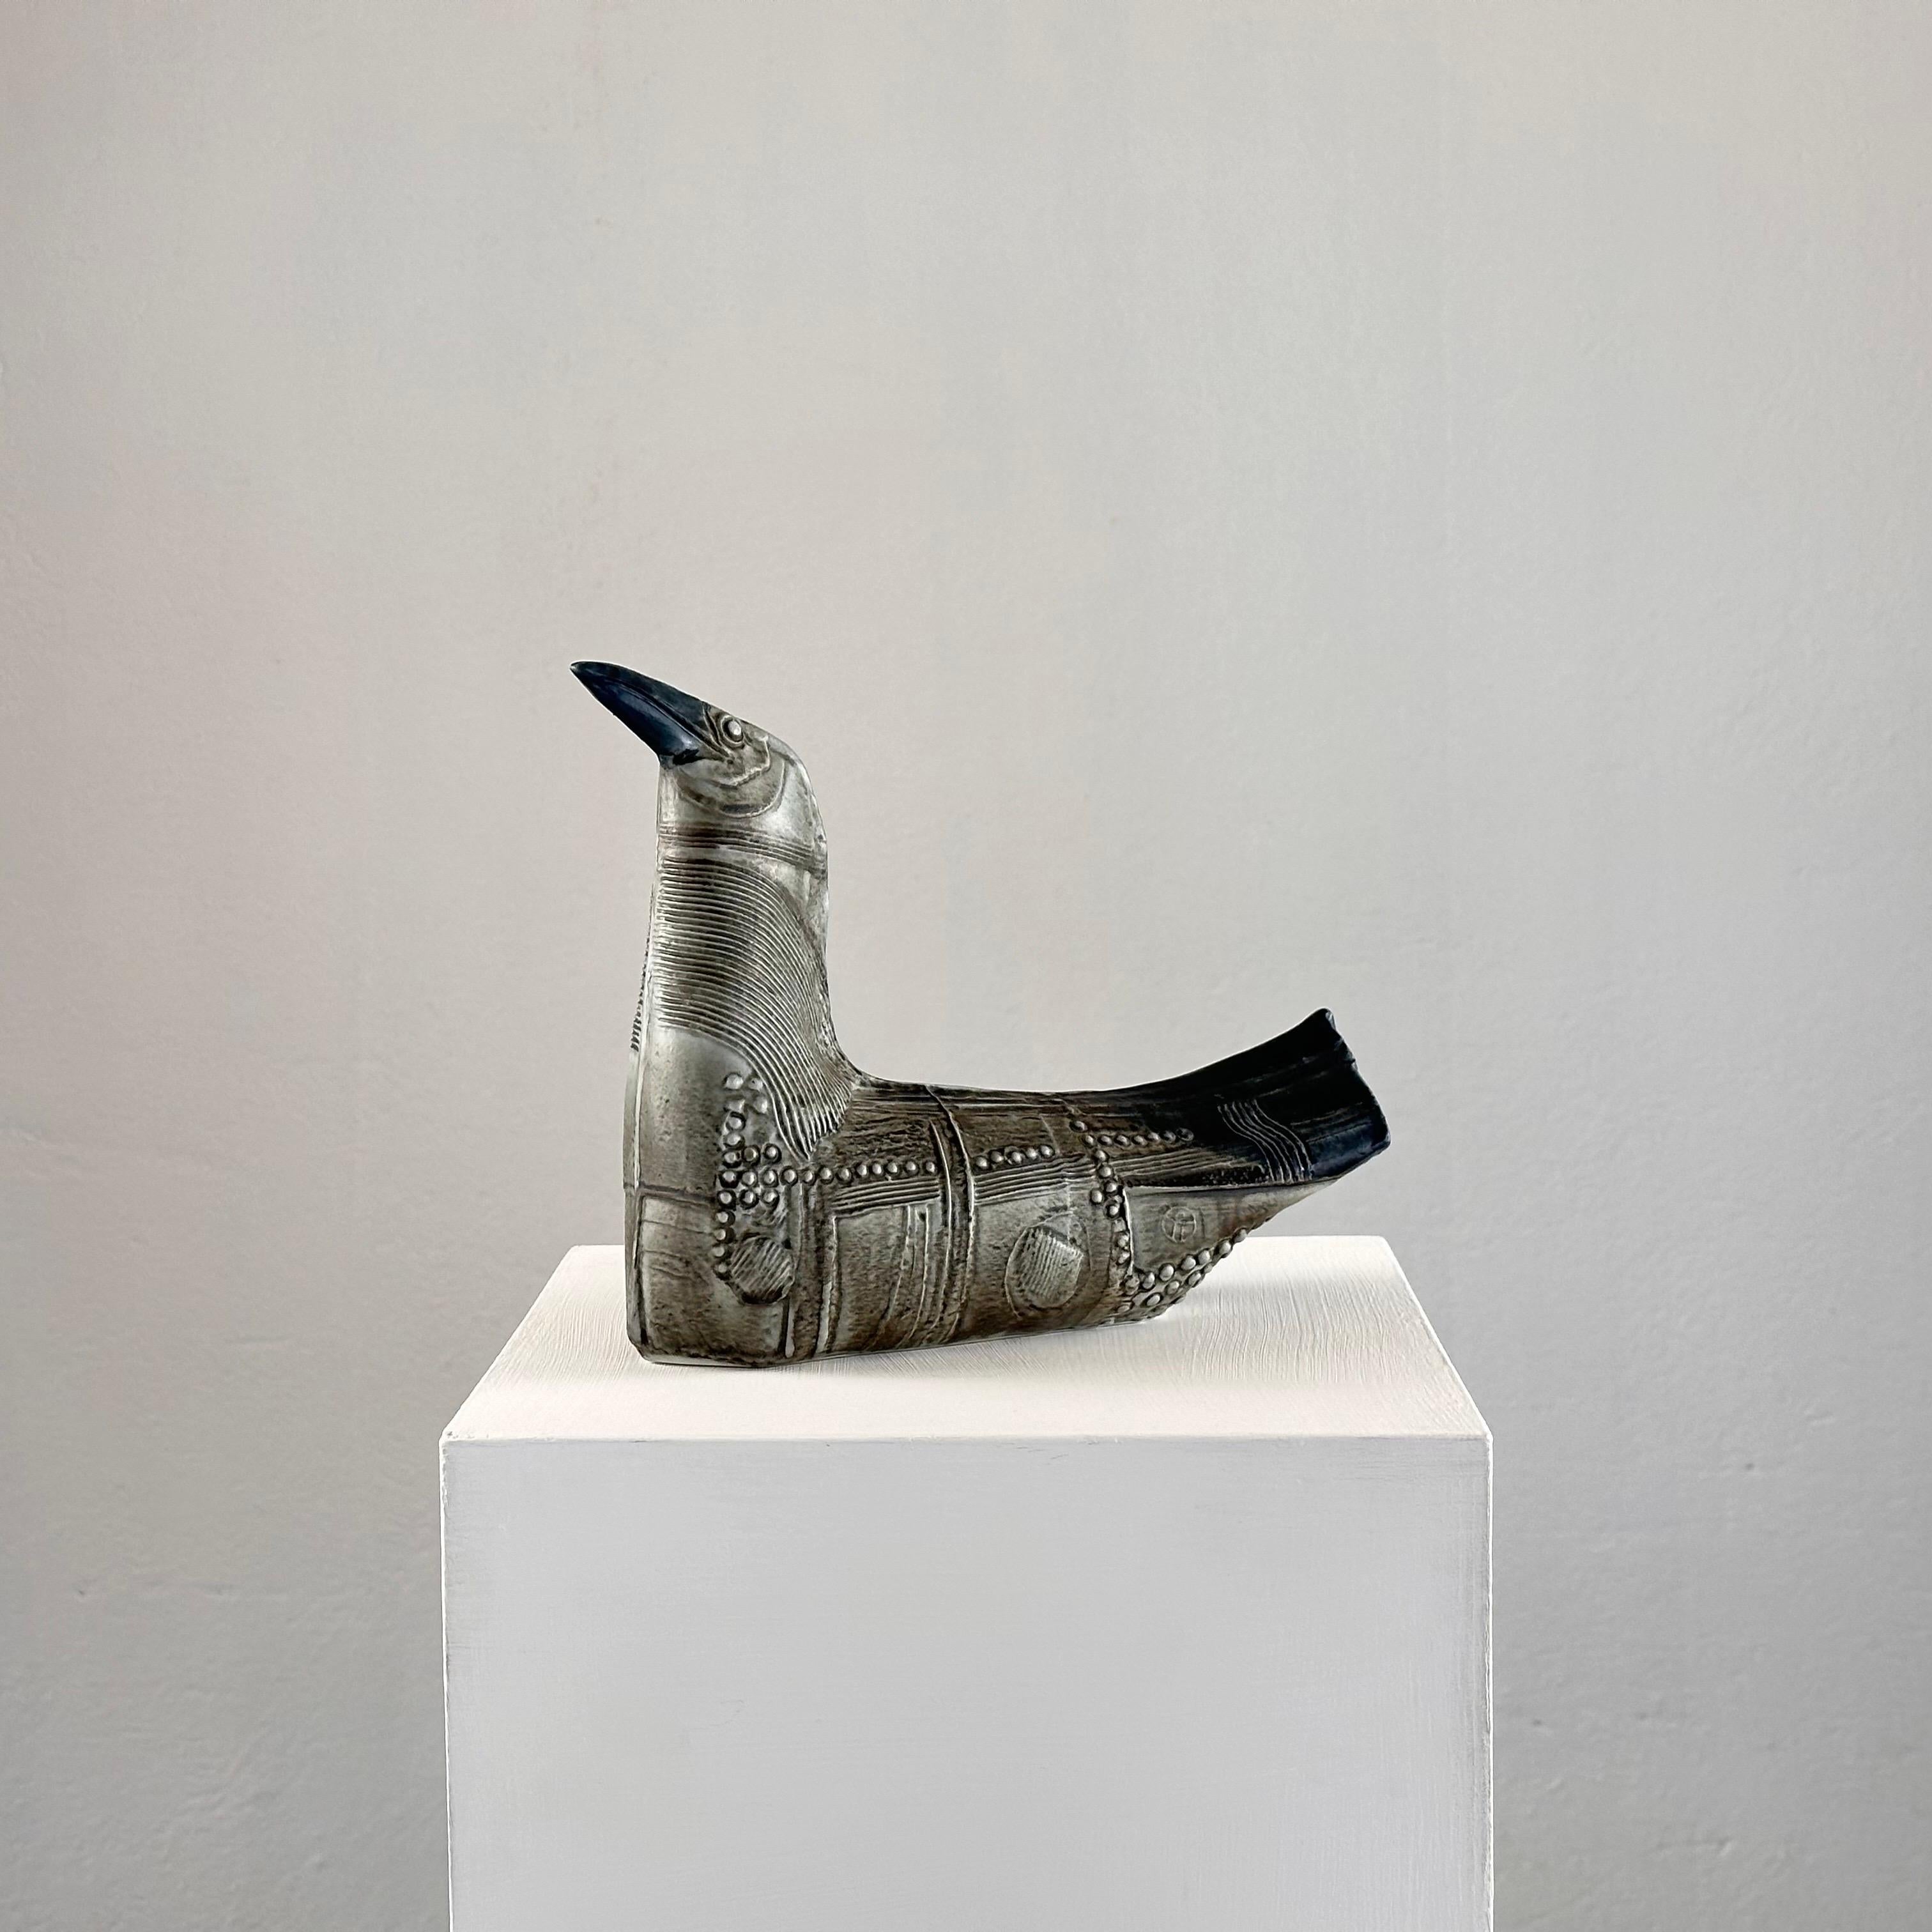 
Gönnen Sie sich zeitlose skandinavische Eleganz mit dieser exquisiten grauen Vogel-Skulptur aus Steinzeug, die der bekannte schwedische Künstler Bertil Vallien in den 1970er Jahren für Rörstrand geschaffen hat. 

Dieses in sorgfältiger Handarbeit